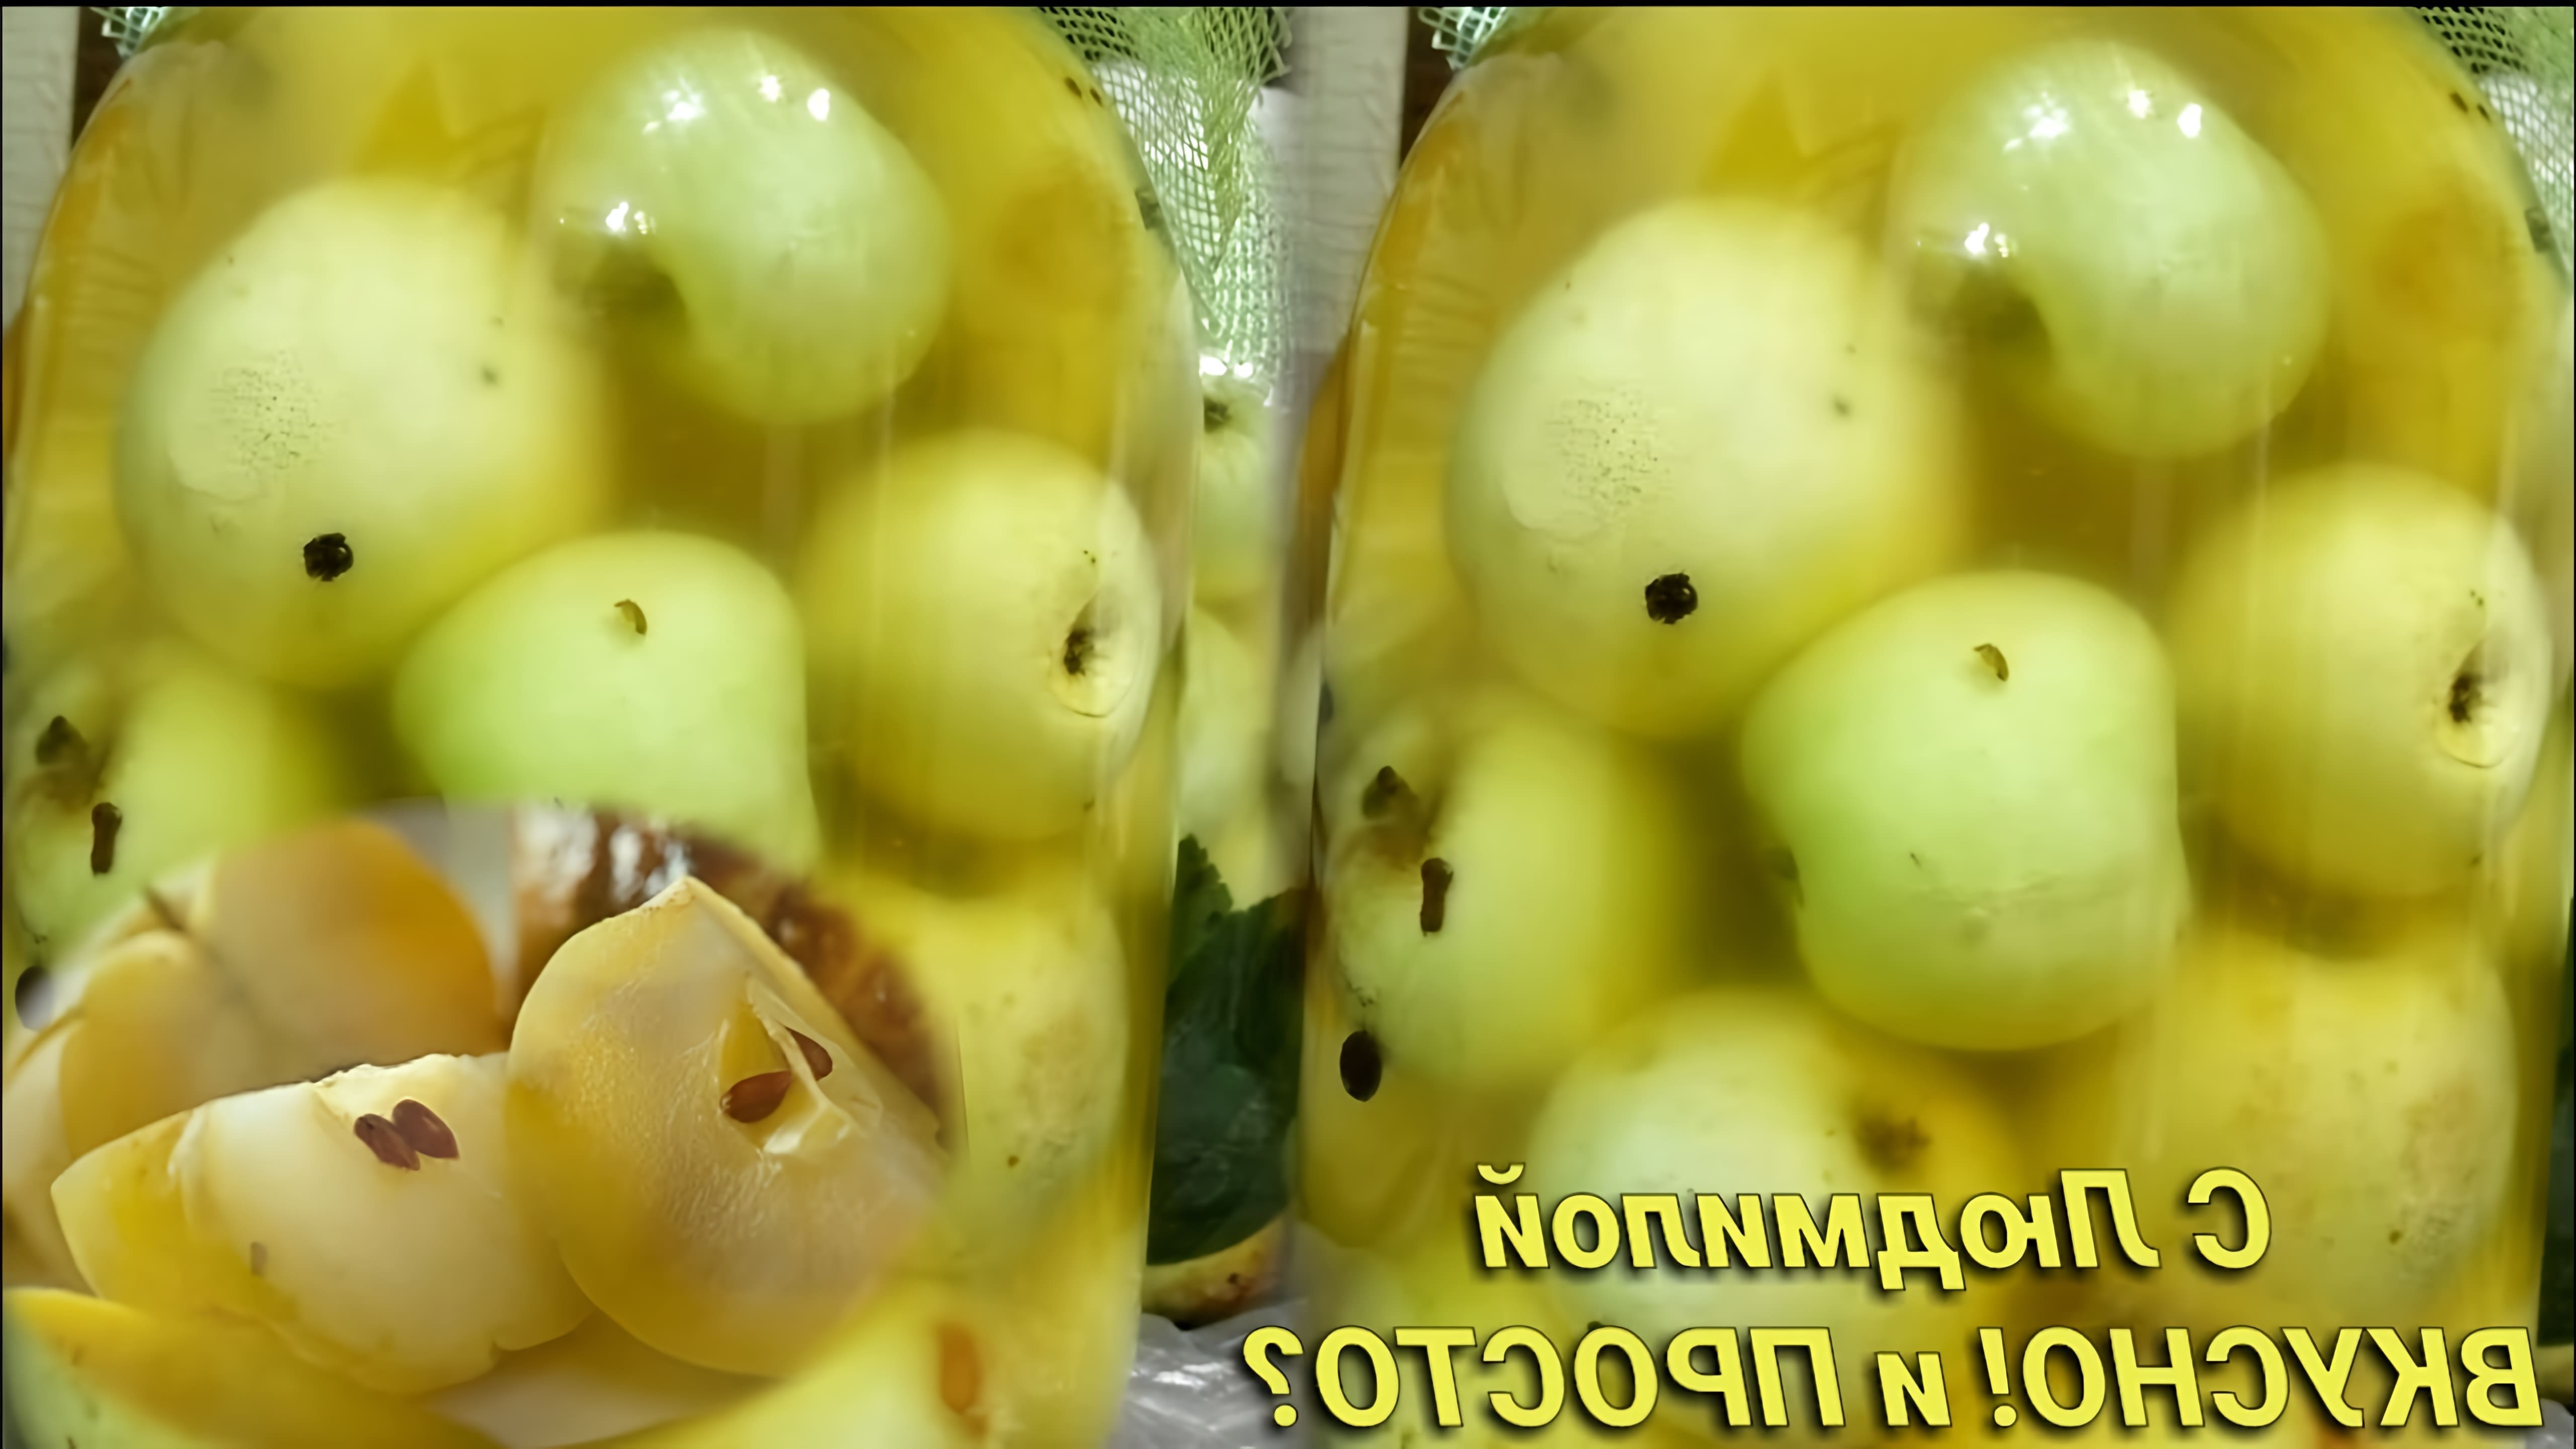 В этом видео демонстрируется процесс приготовления моченых яблок на меду